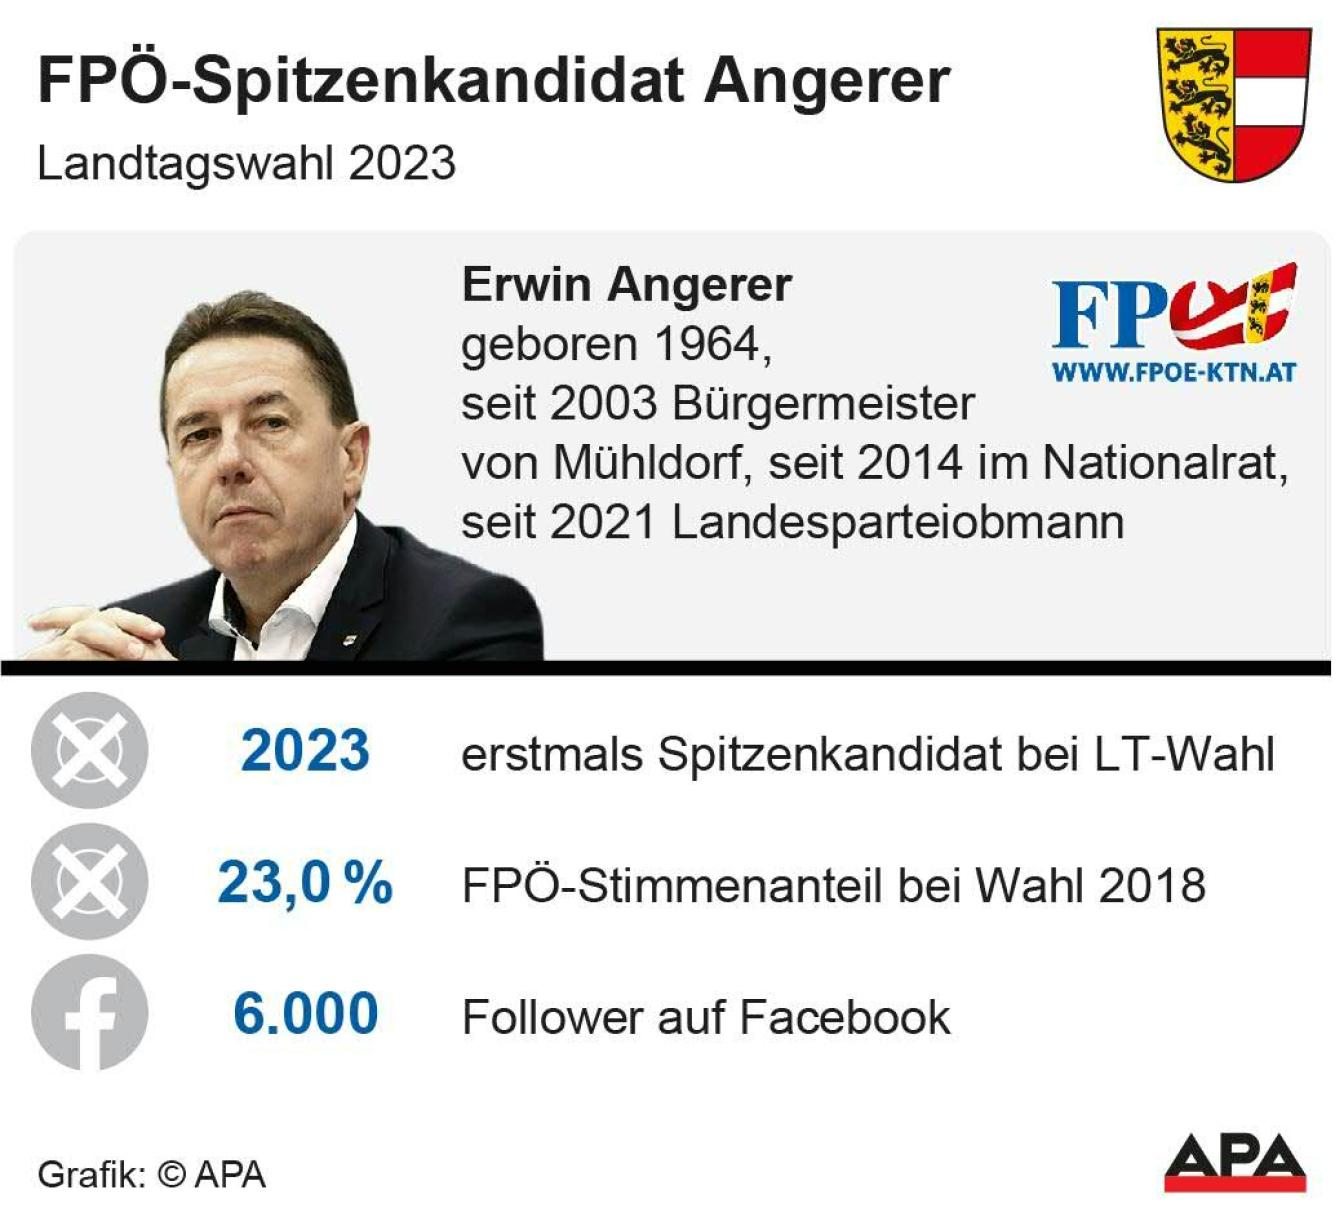 FPÖ-Spitzenkandidat Erwin Angerer